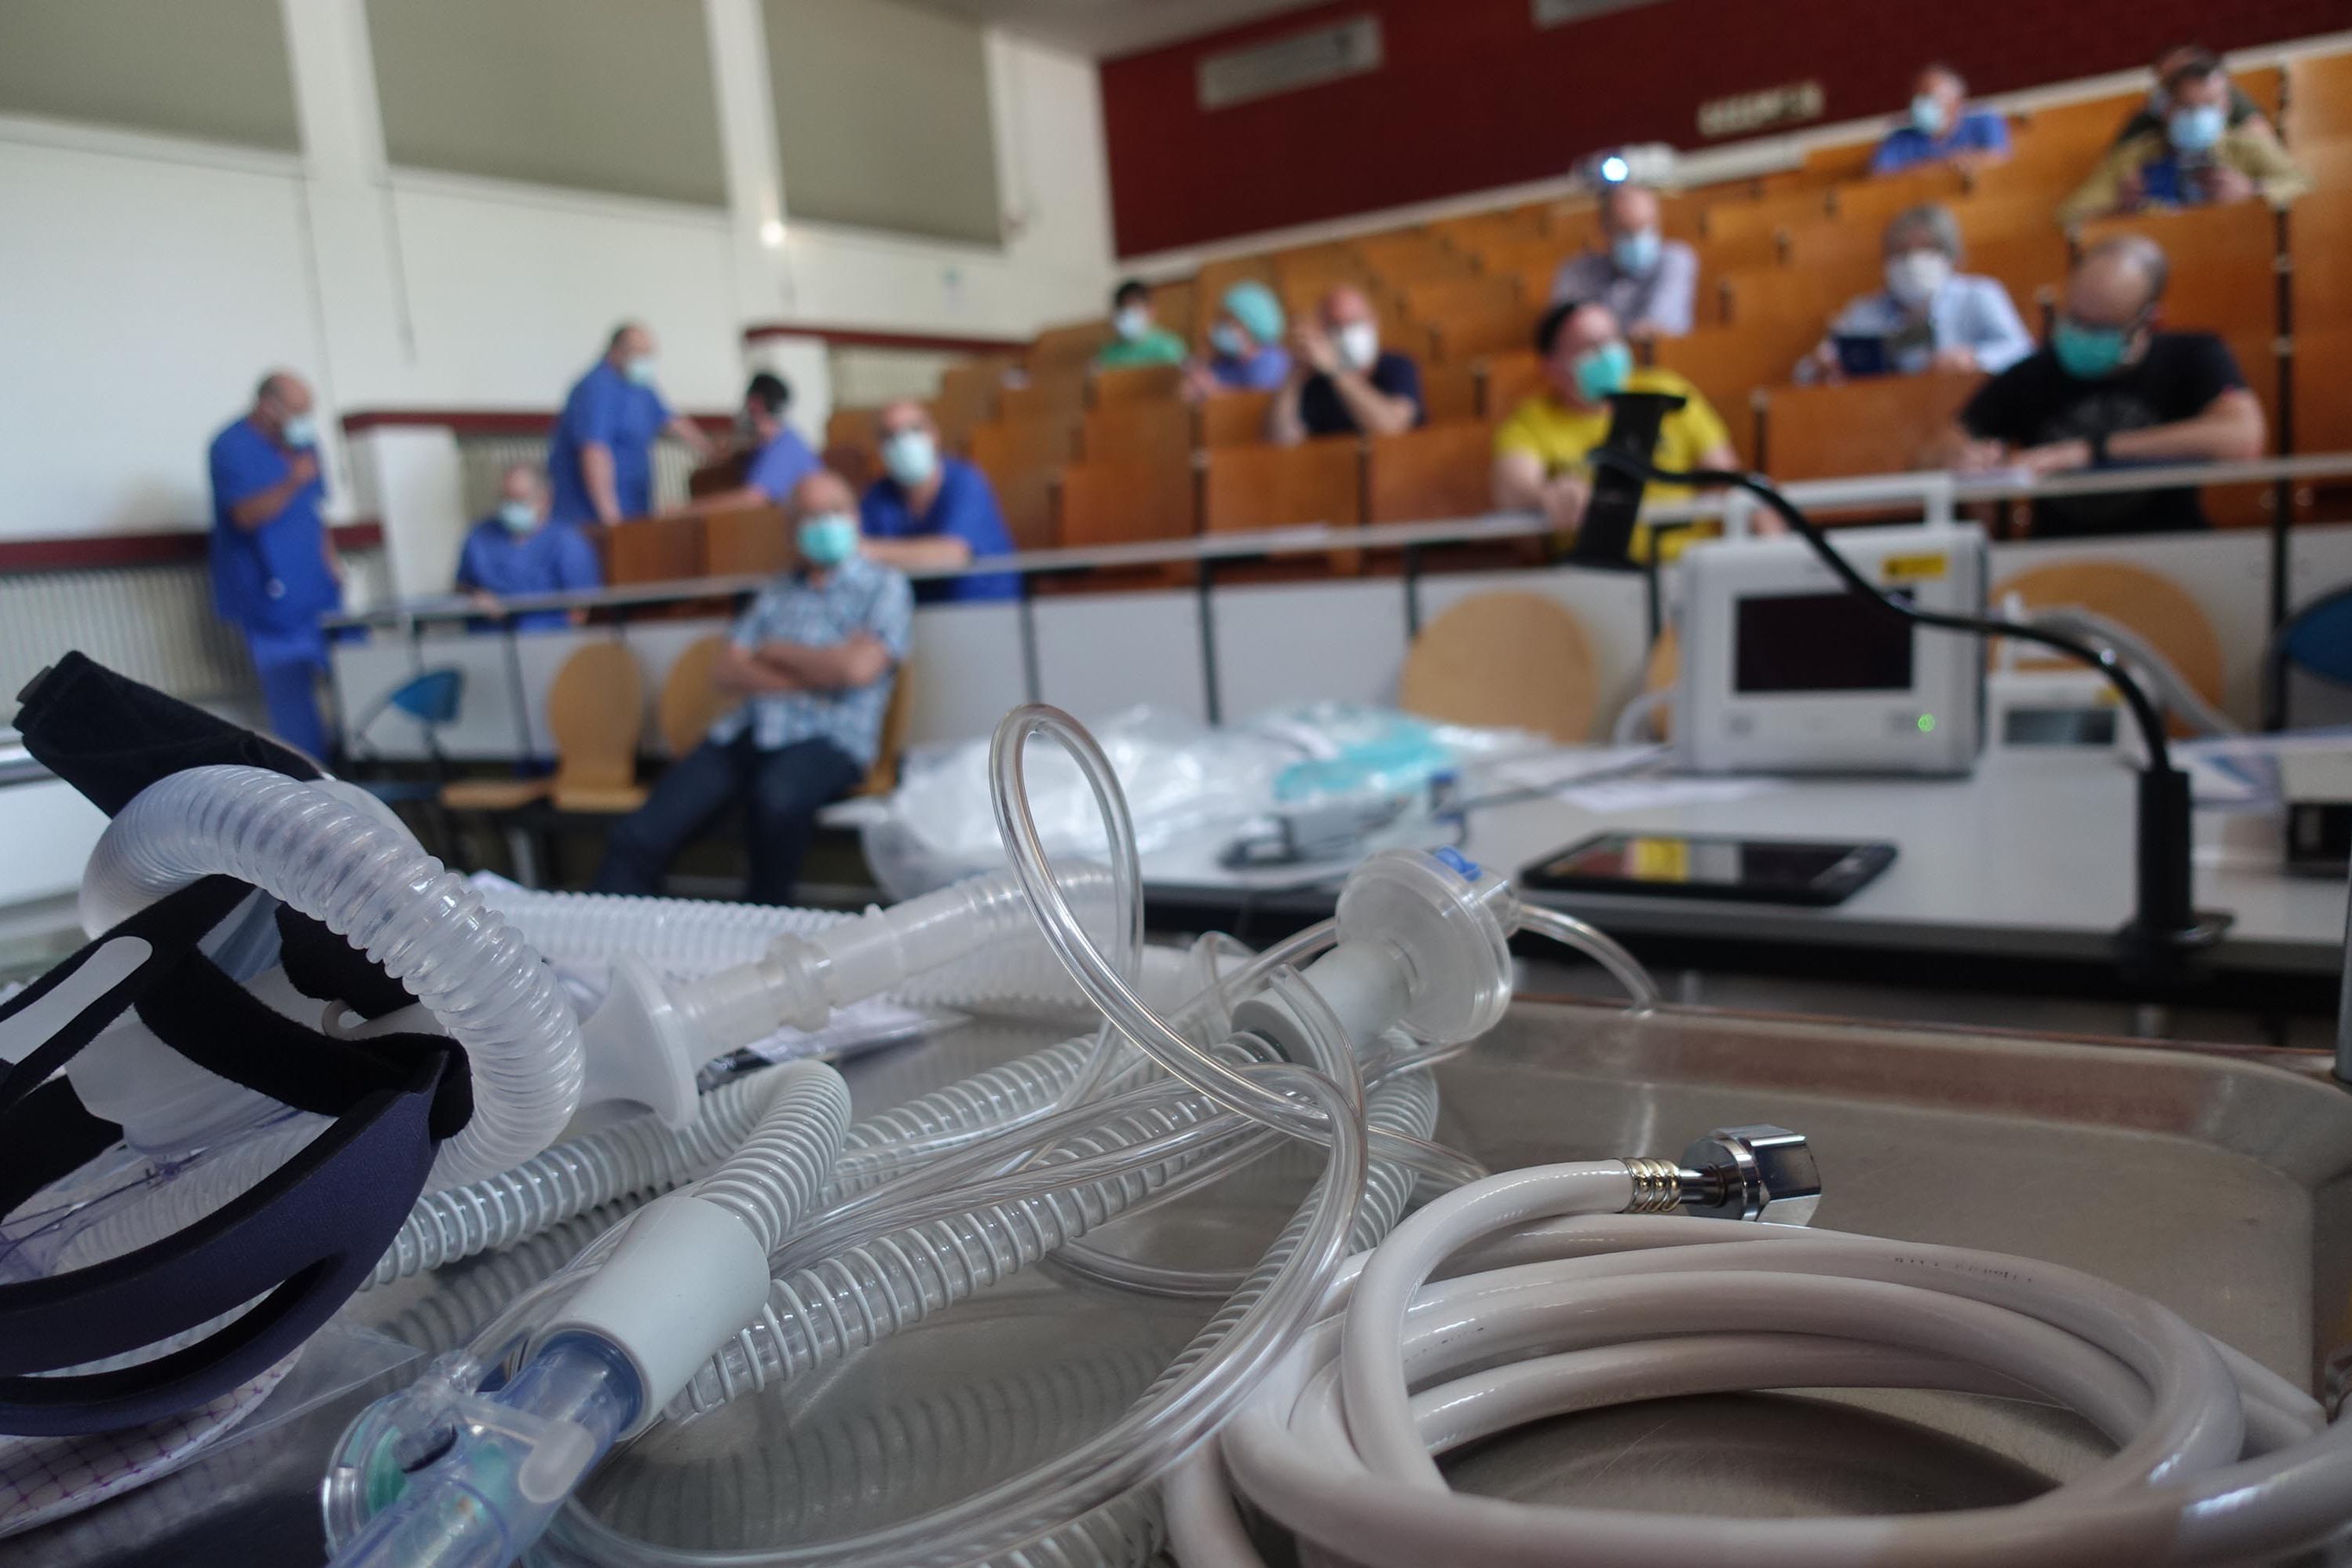 Einweisung in die Nutzung bundes- und landesfinanzierter Beatmungsgeräte für saarländische Krankenhäuser im Hörsaal des Klinikums Saarbrücken